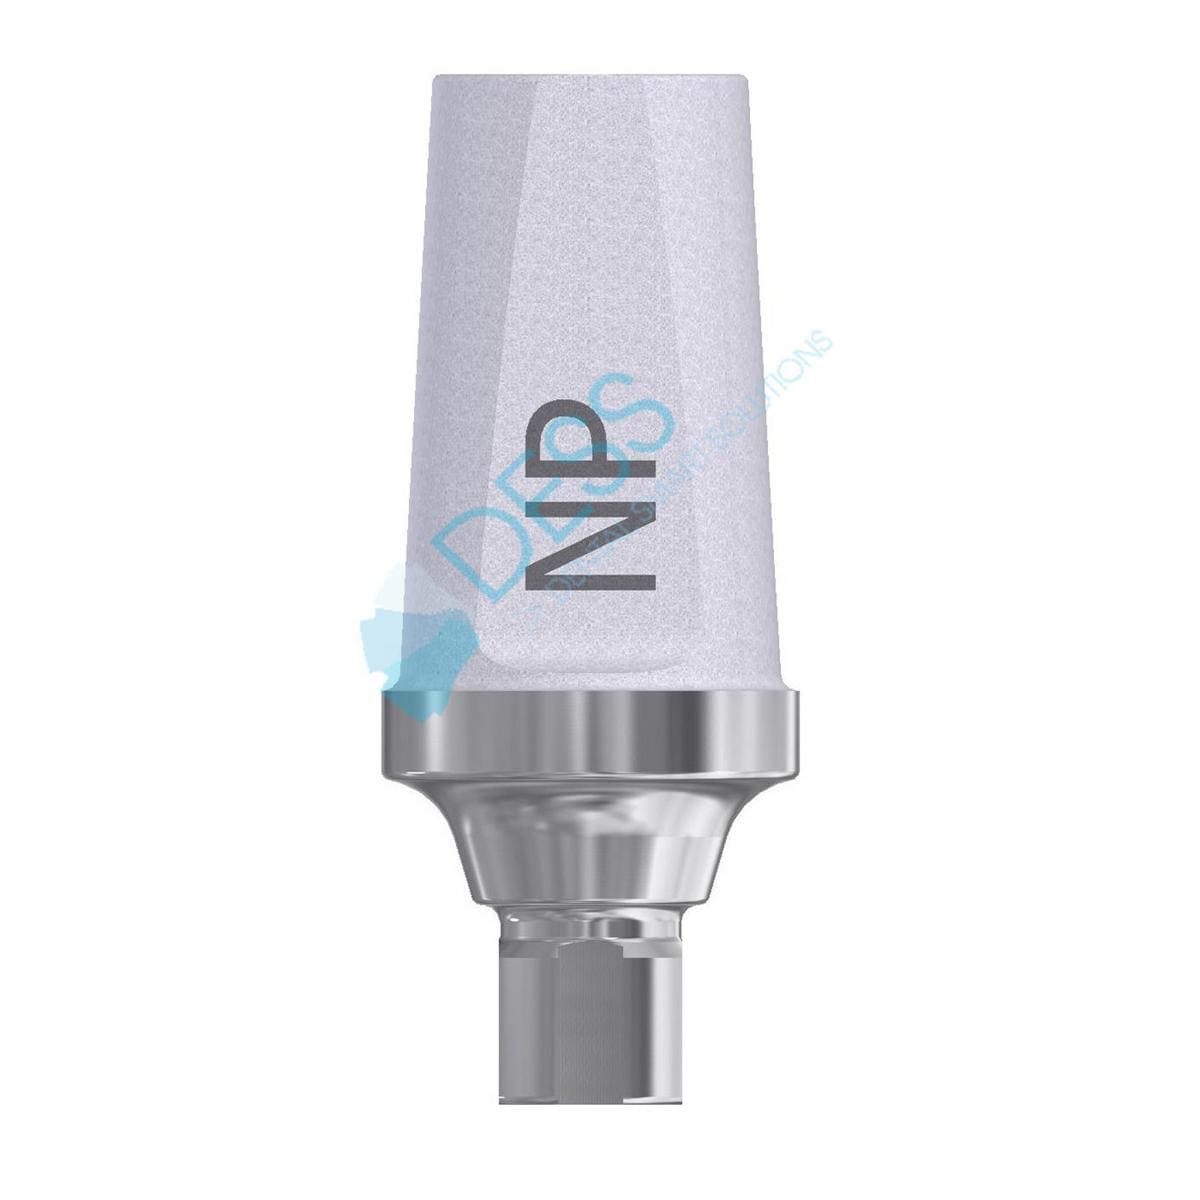 Titanabutment - kompatibel mit Straumann® Bone Level® - NC Ø 3,3 mm, 0° gewinkelt